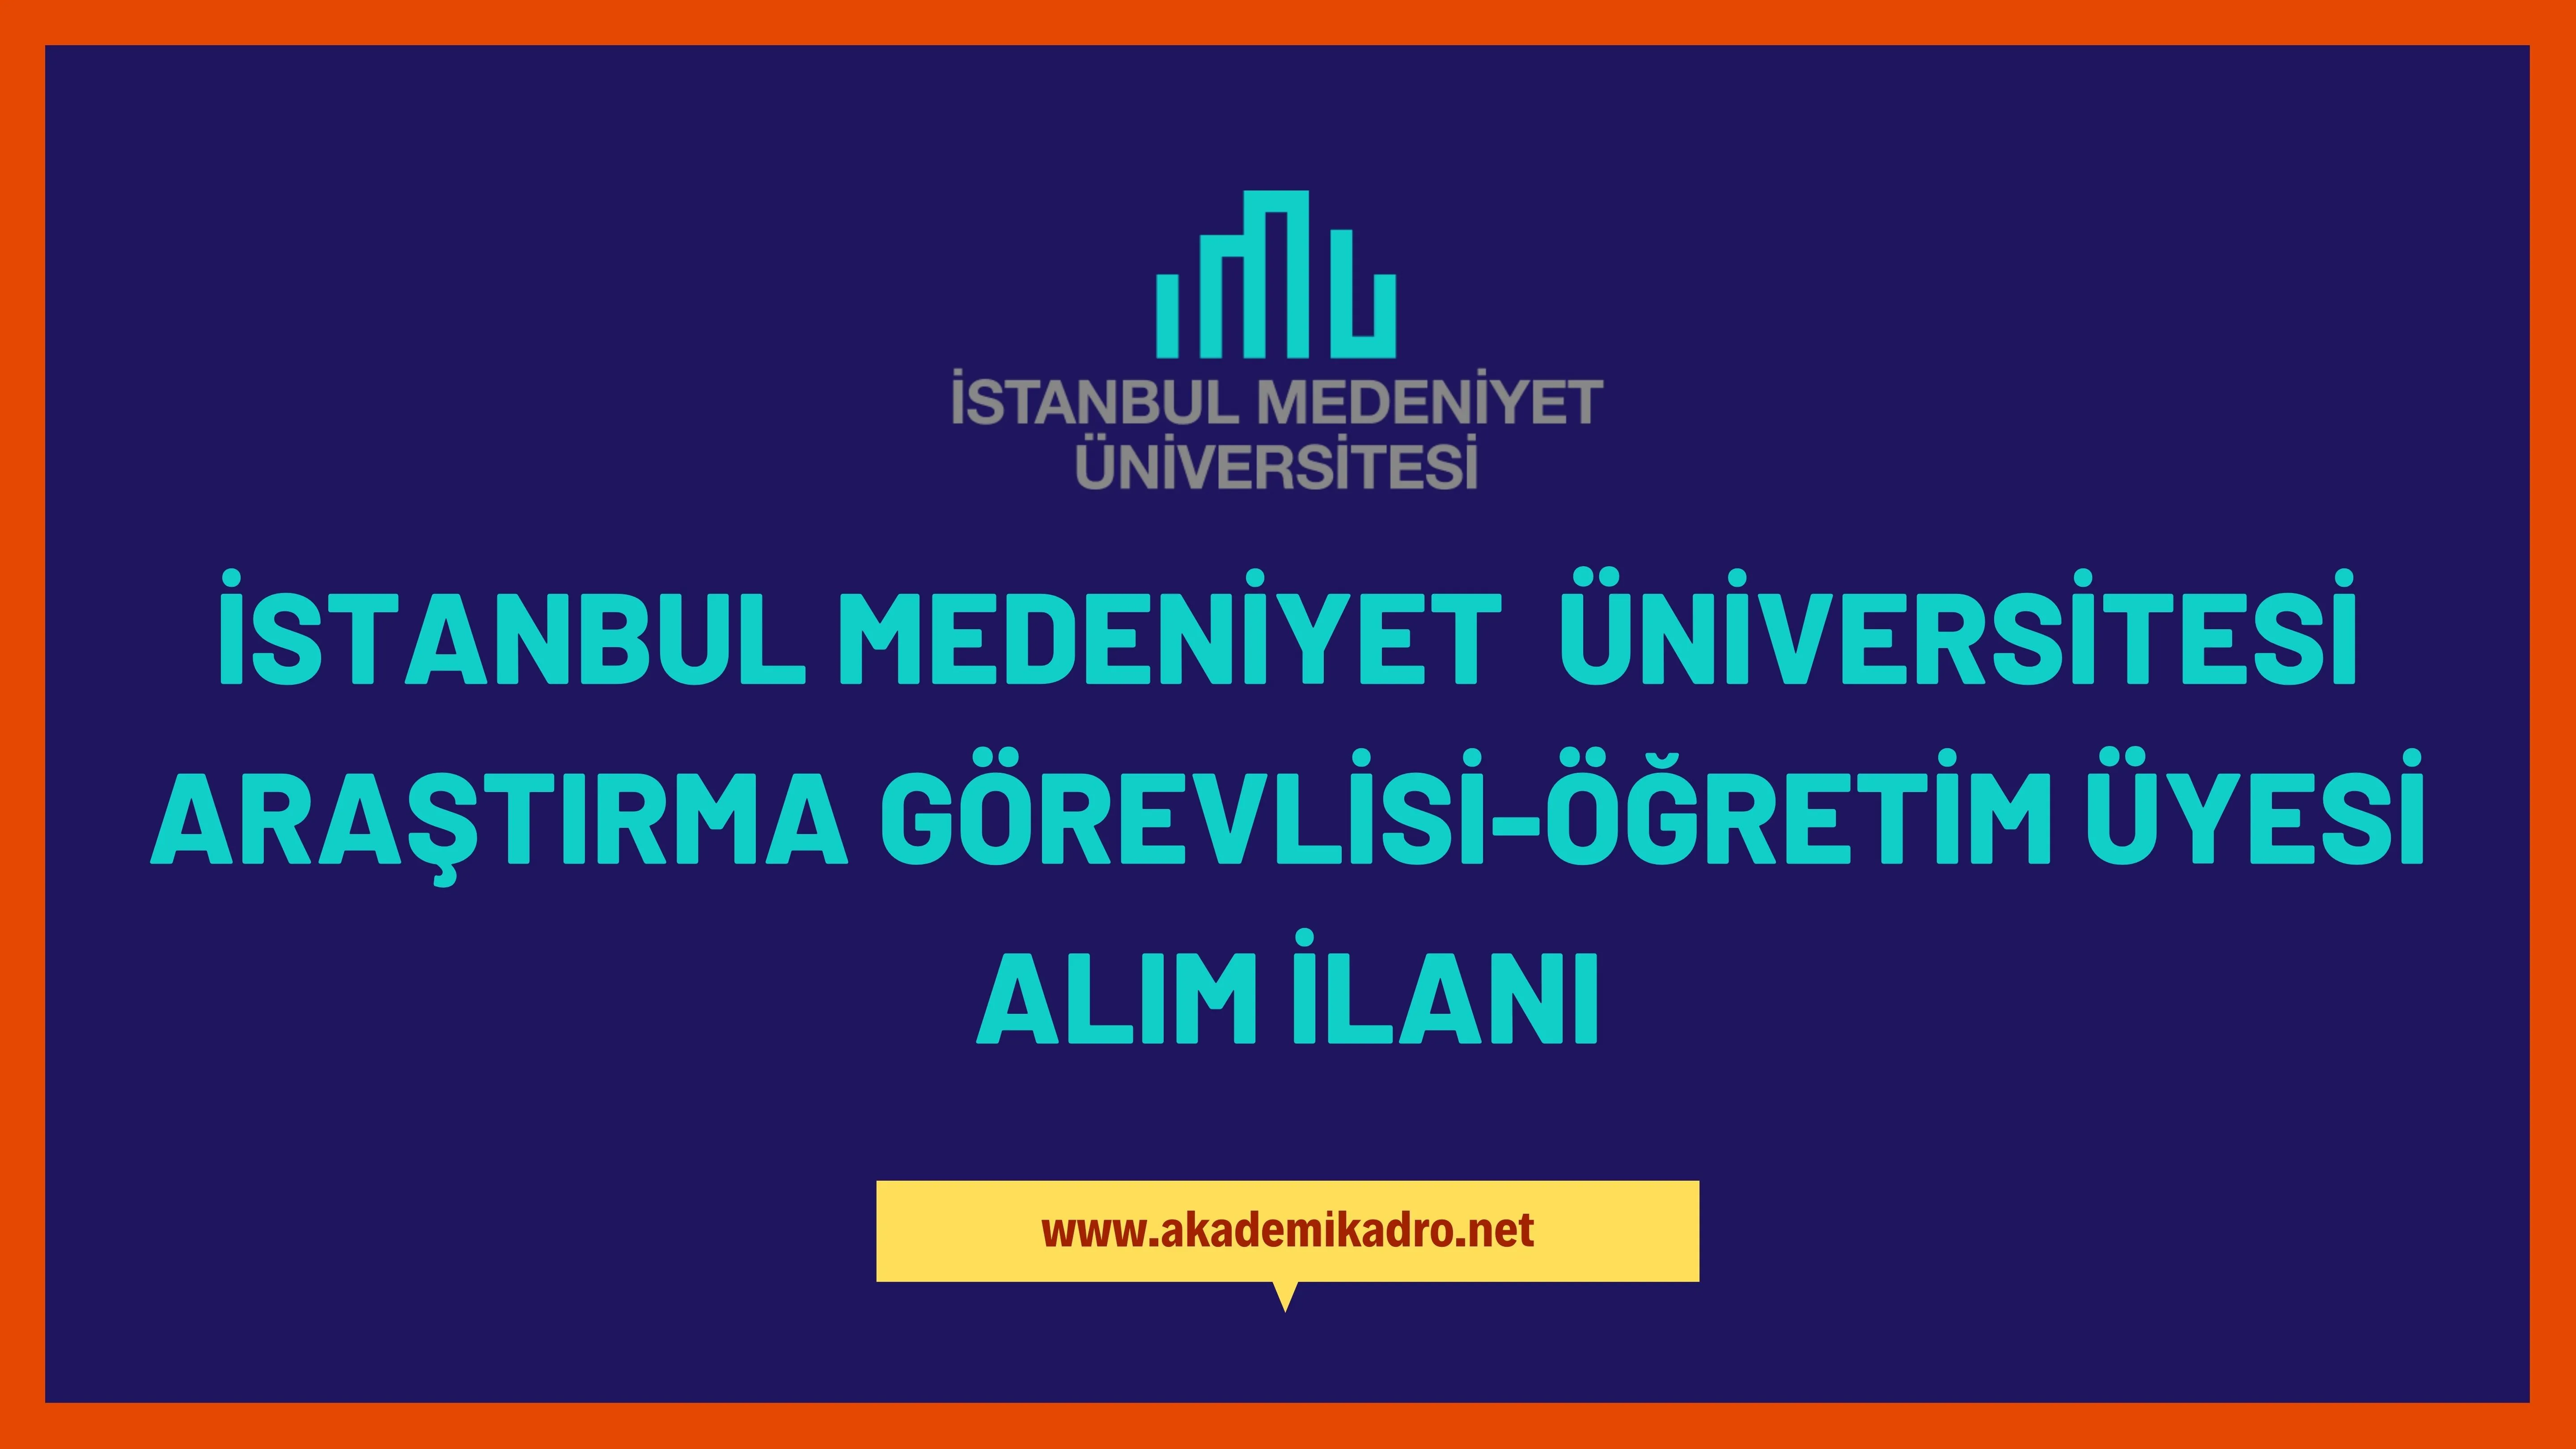 İstanbul Medeniyet Üniversitesi Araştırma görevlisi, Öğretim görevlisi ve öğretim üyesi olmak üzere 52 Öğretim elemaı alacak.